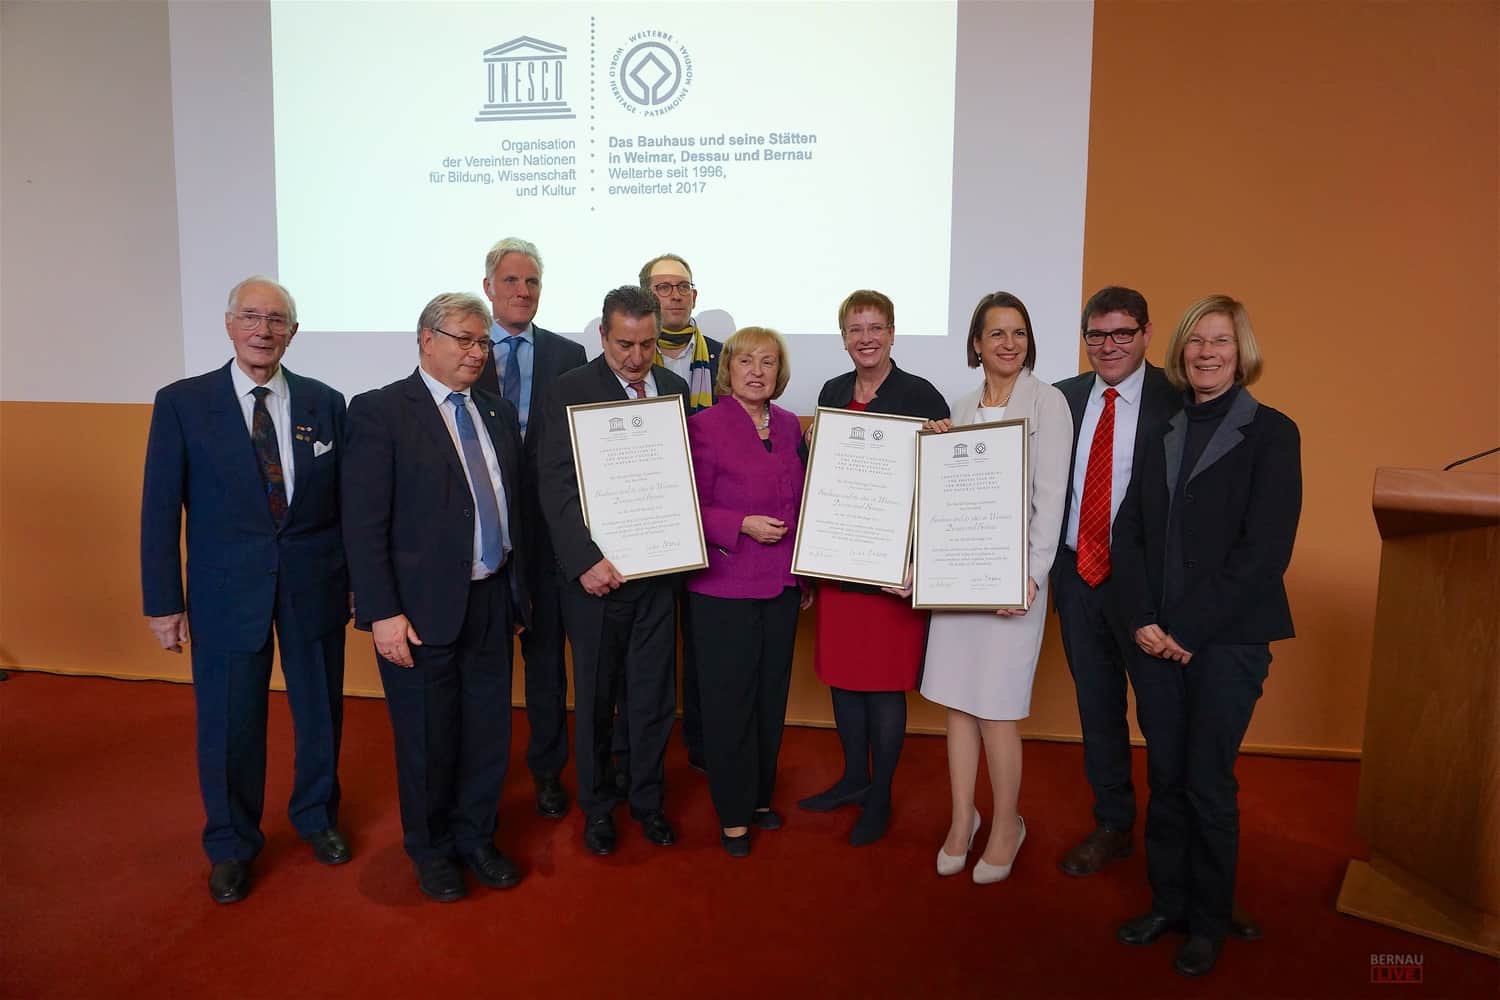 Bernau: FESTAKT zur Erweiterung der UNESCO-Welterbestätte Bauhaus